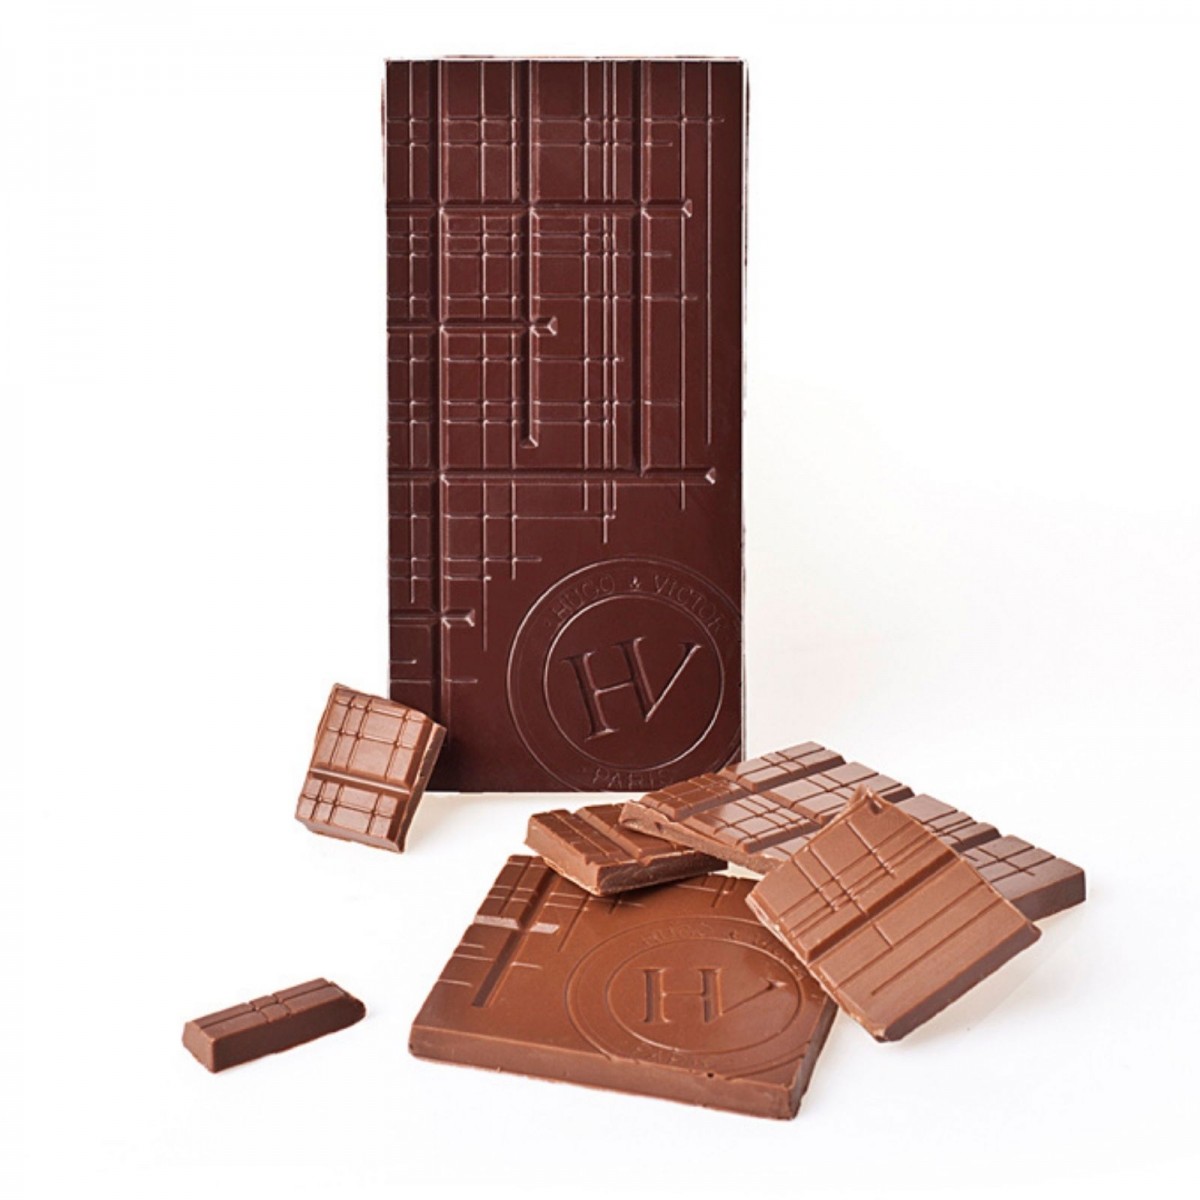 Chocolats artisanaux | Tablette Venezuela 72% sans...